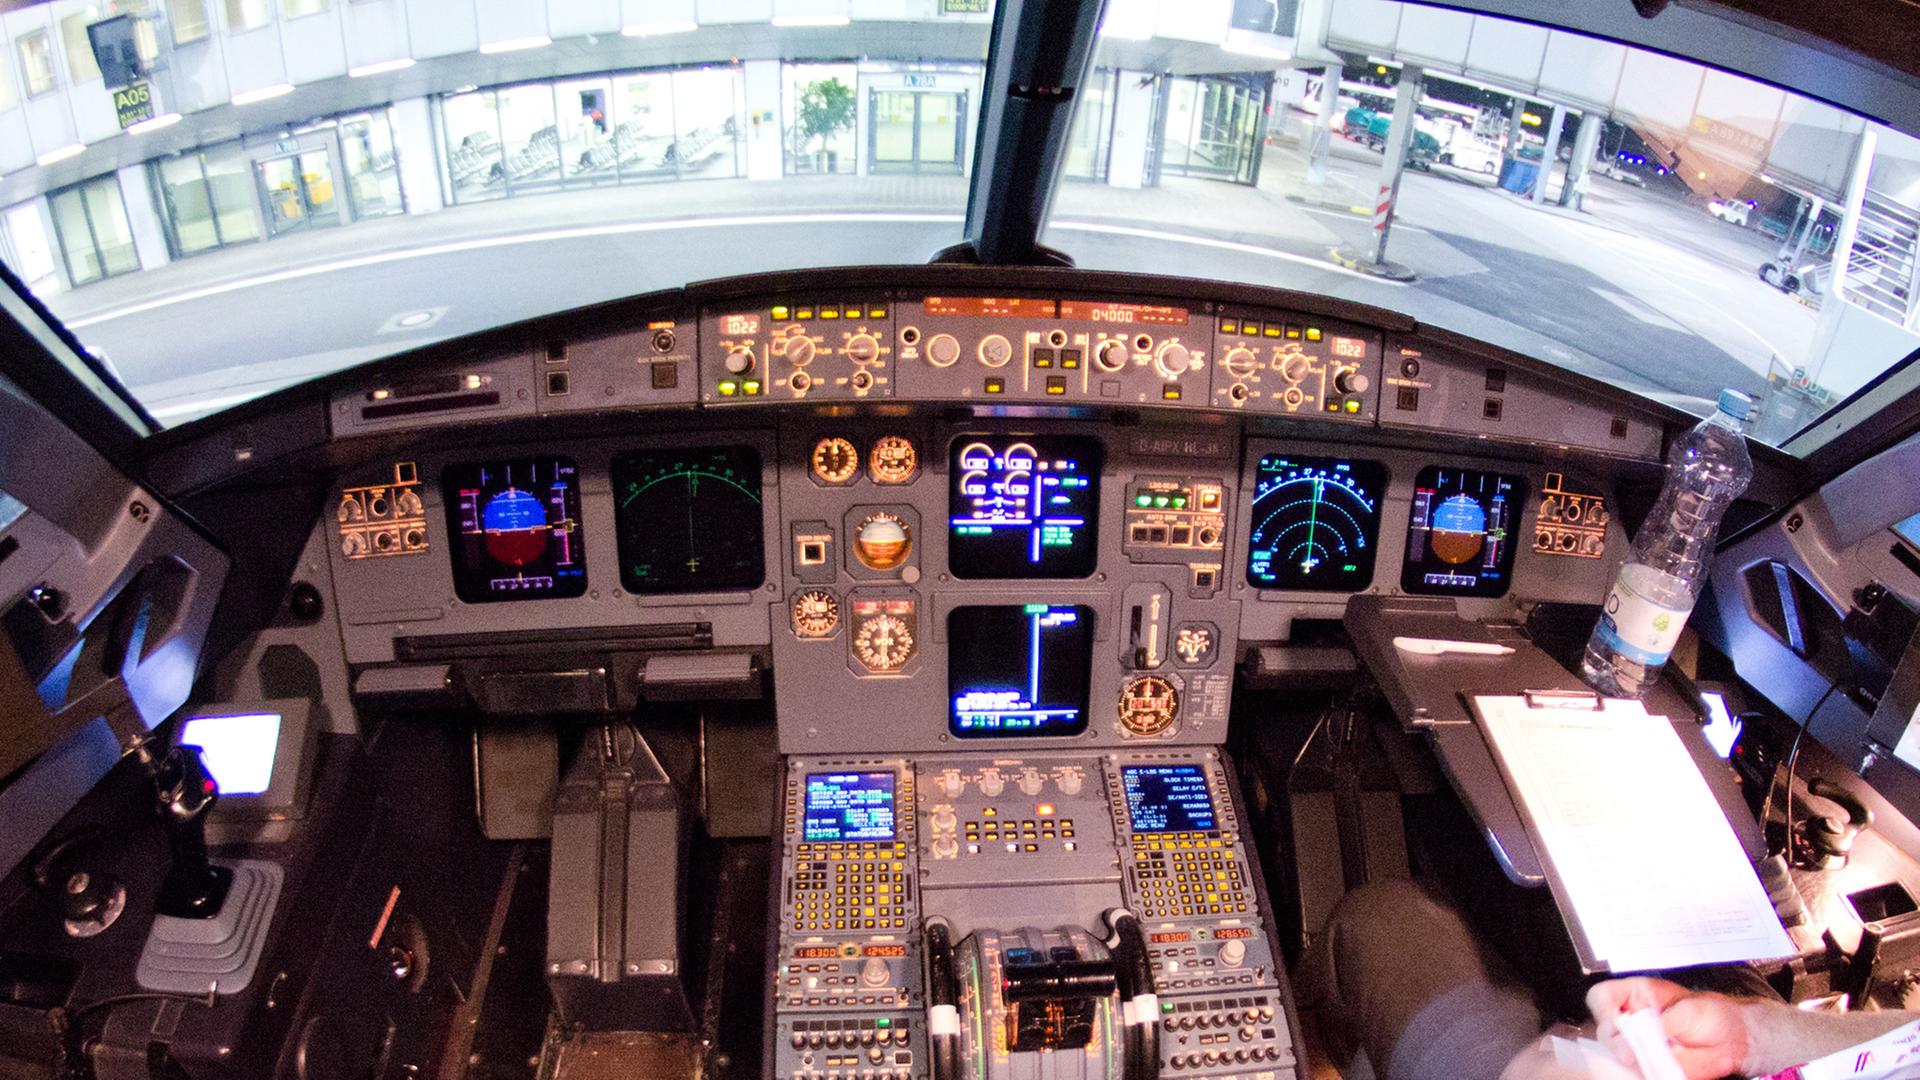 Blick in das Cockpit des verunglückten Airbus A320 mit der Kennung D-AIPX der Fluggesellschaft Germanwings. Das Bild entstand am 22.03.2015 auf dem Flughafen in Düsseldorf (Nordrhein-Westfalen) nach einem der letzten Flüge vor dem Absturz der Maschine in 